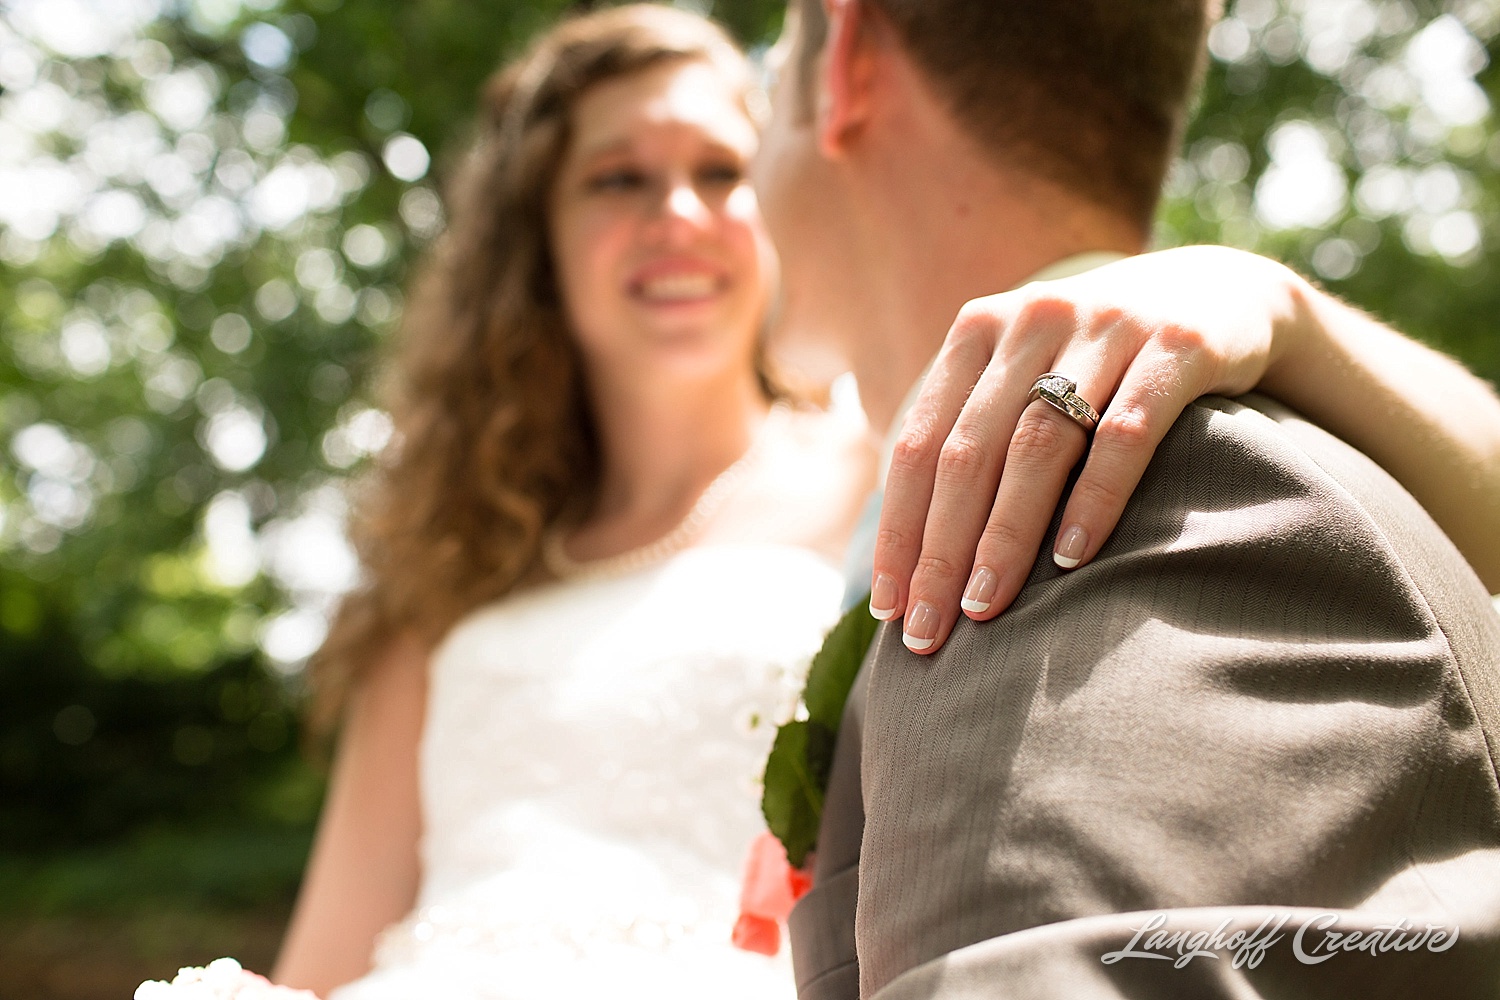 WeddingPhotography-NCwedding-RaleighWedding-WeddingPhotographer-2015-OutdoorWedding-Steckman-LanghoffCreative_28-photo.jpg